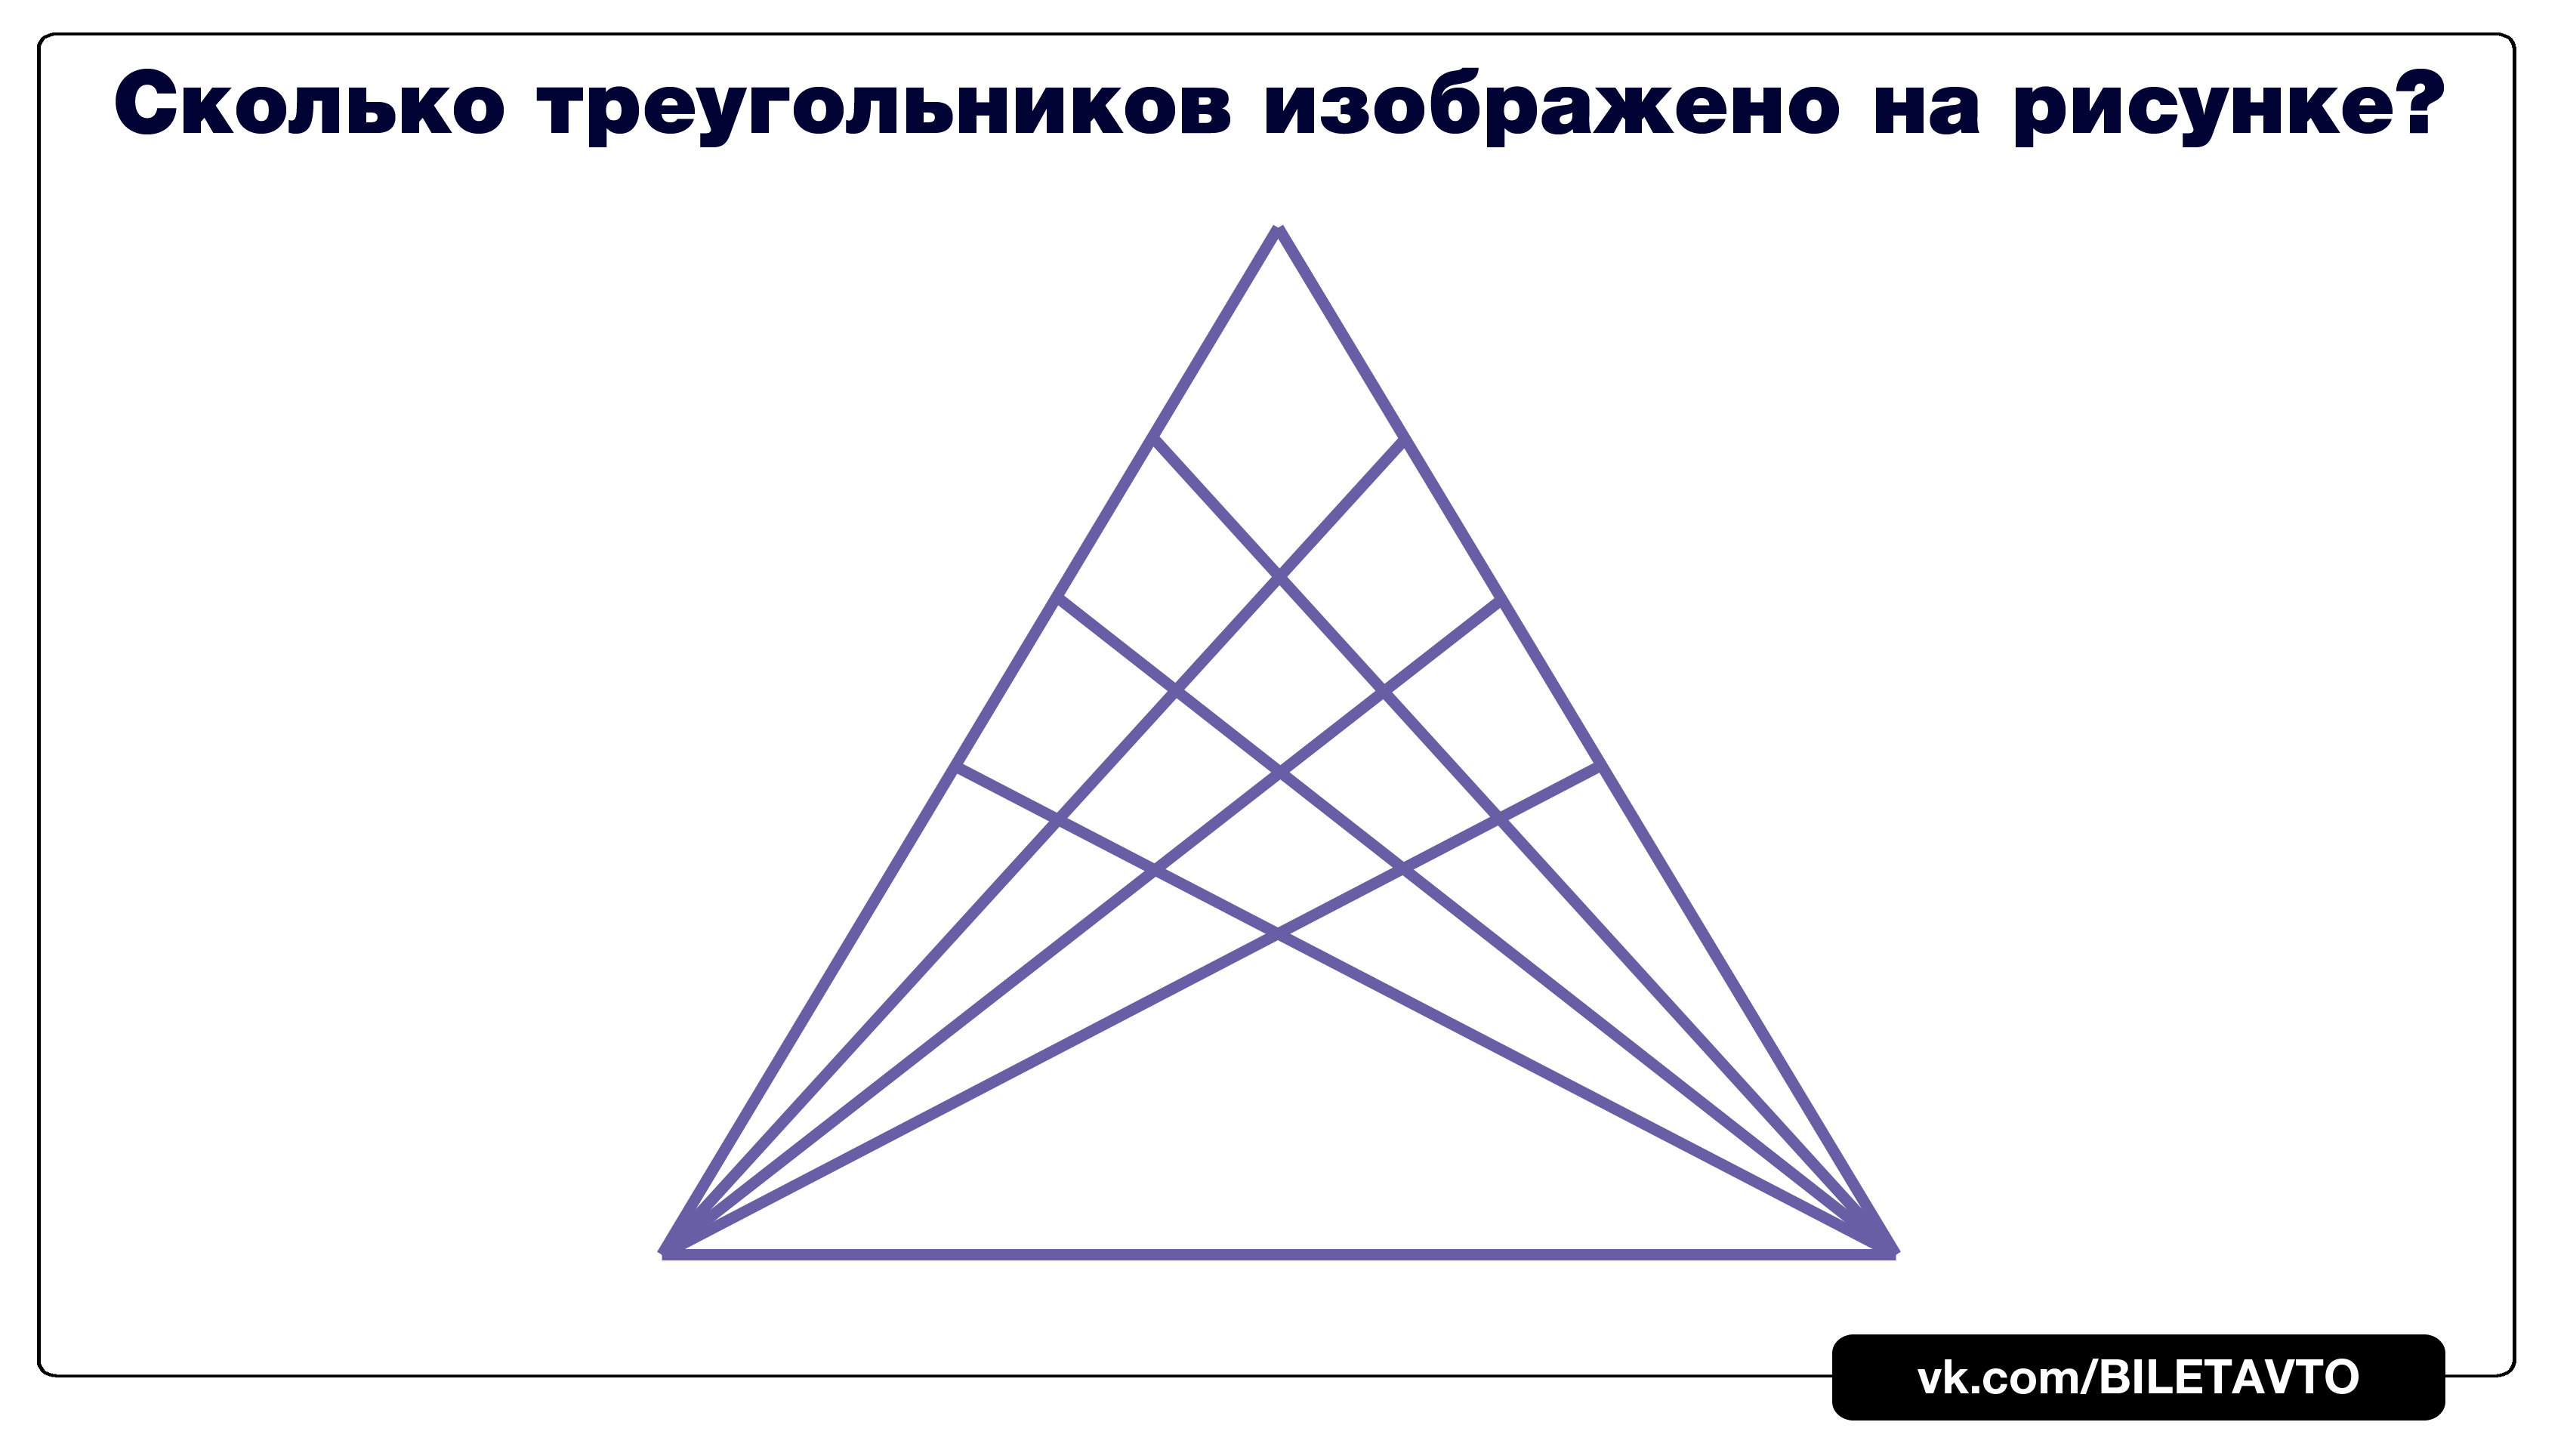 Сколько треугольников на картине